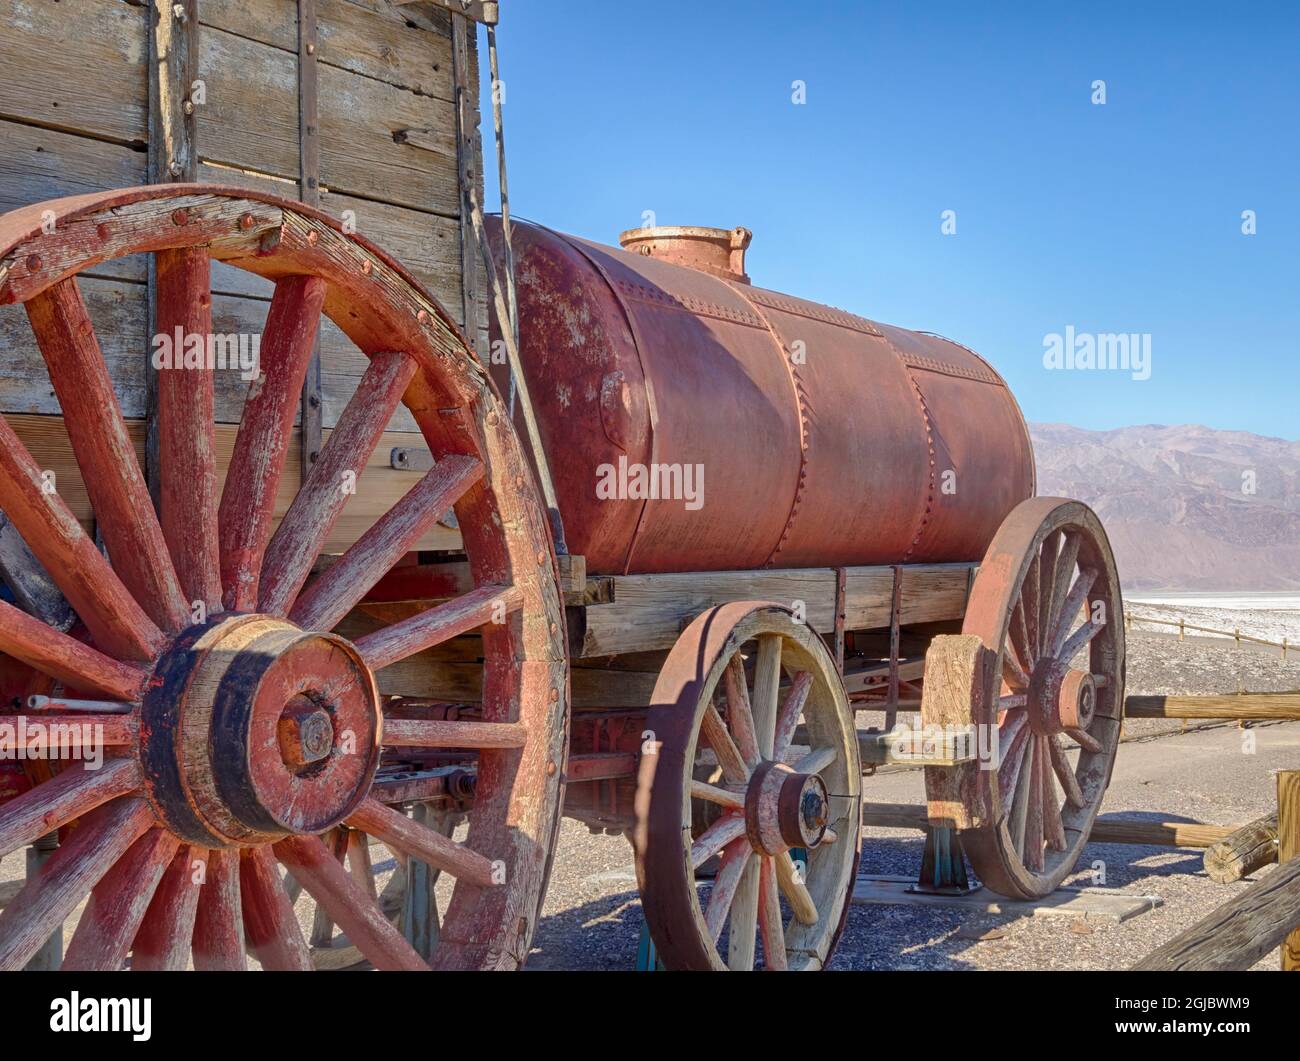 USA, California. Death Valley National Park, 20 Mule Team Wagon Train, 1200 galloni serbatoio d'acqua utilizzato per i muli. Foto Stock